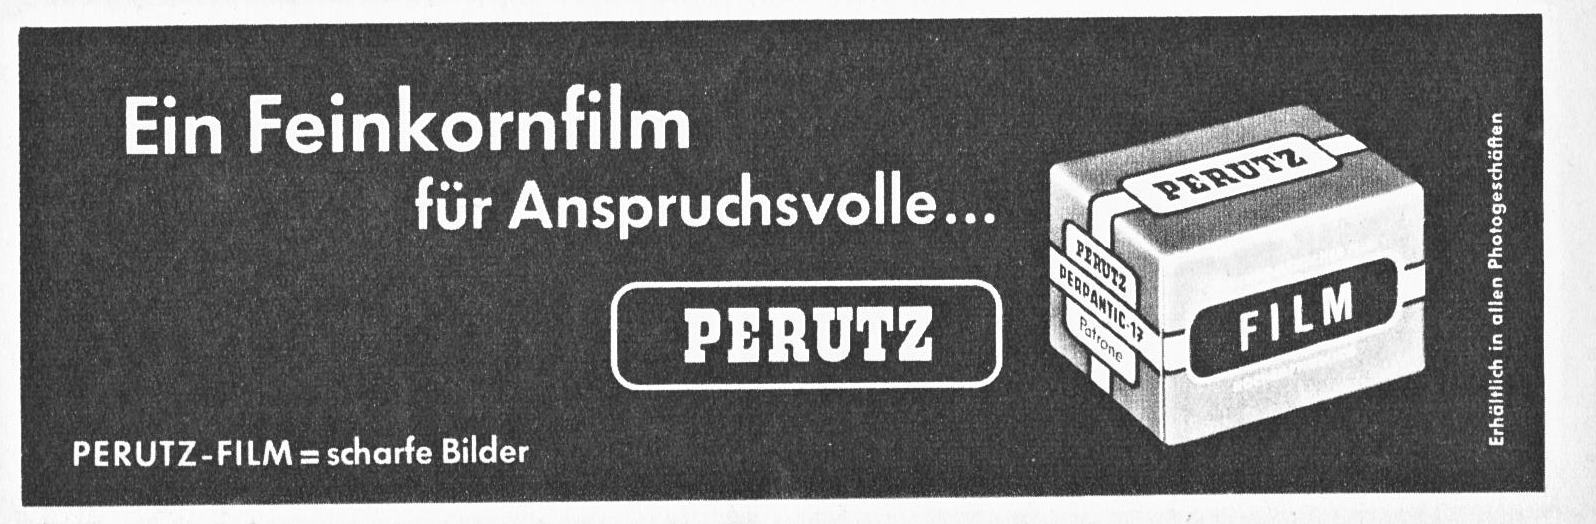 Perutz 1959 H.jpg